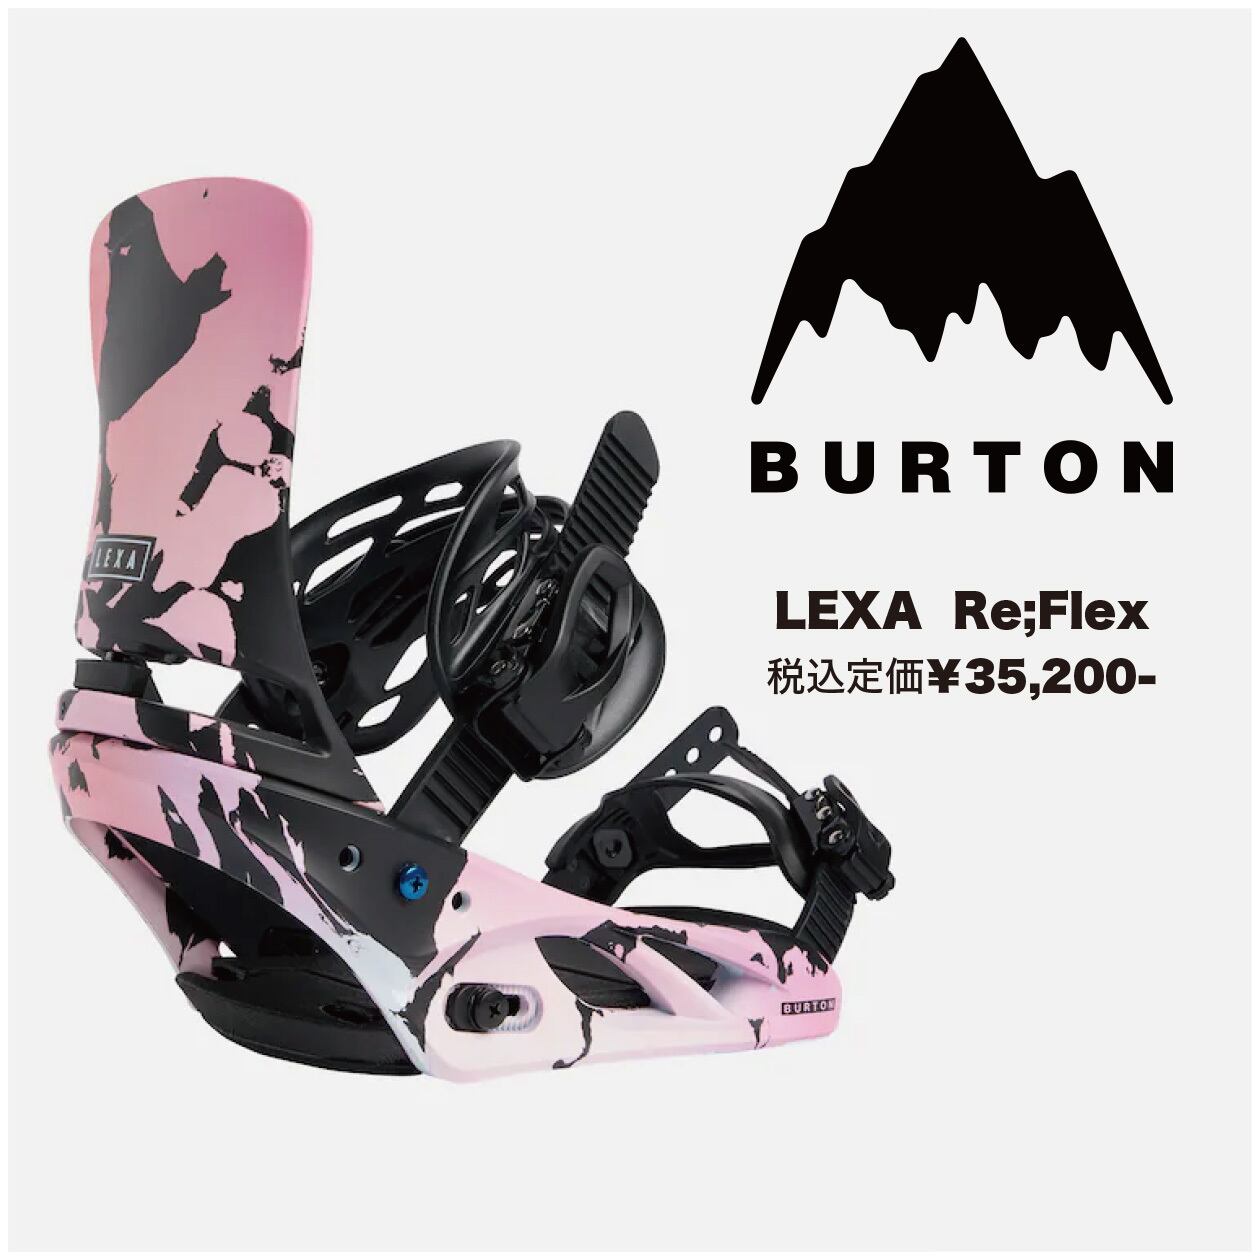 22-23年モデル BURTON. LEXA. Re:Flex. Pink Black. バートン レクサ 